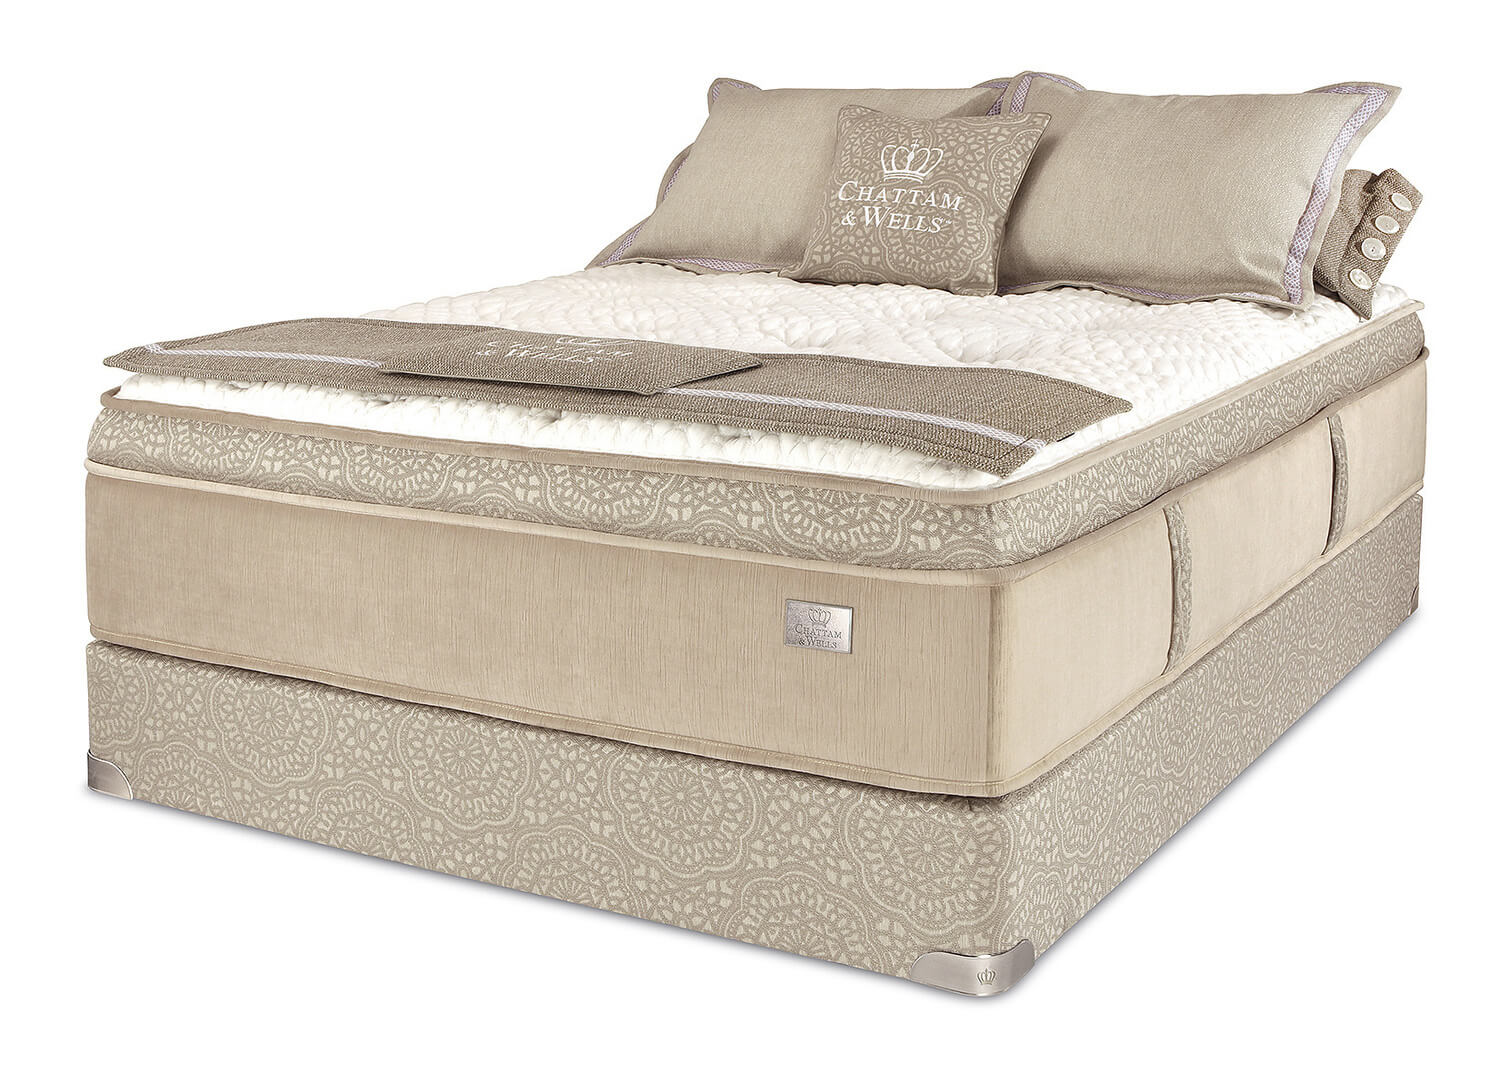 chattam & wells hamilton pillow top 13 inch mattress